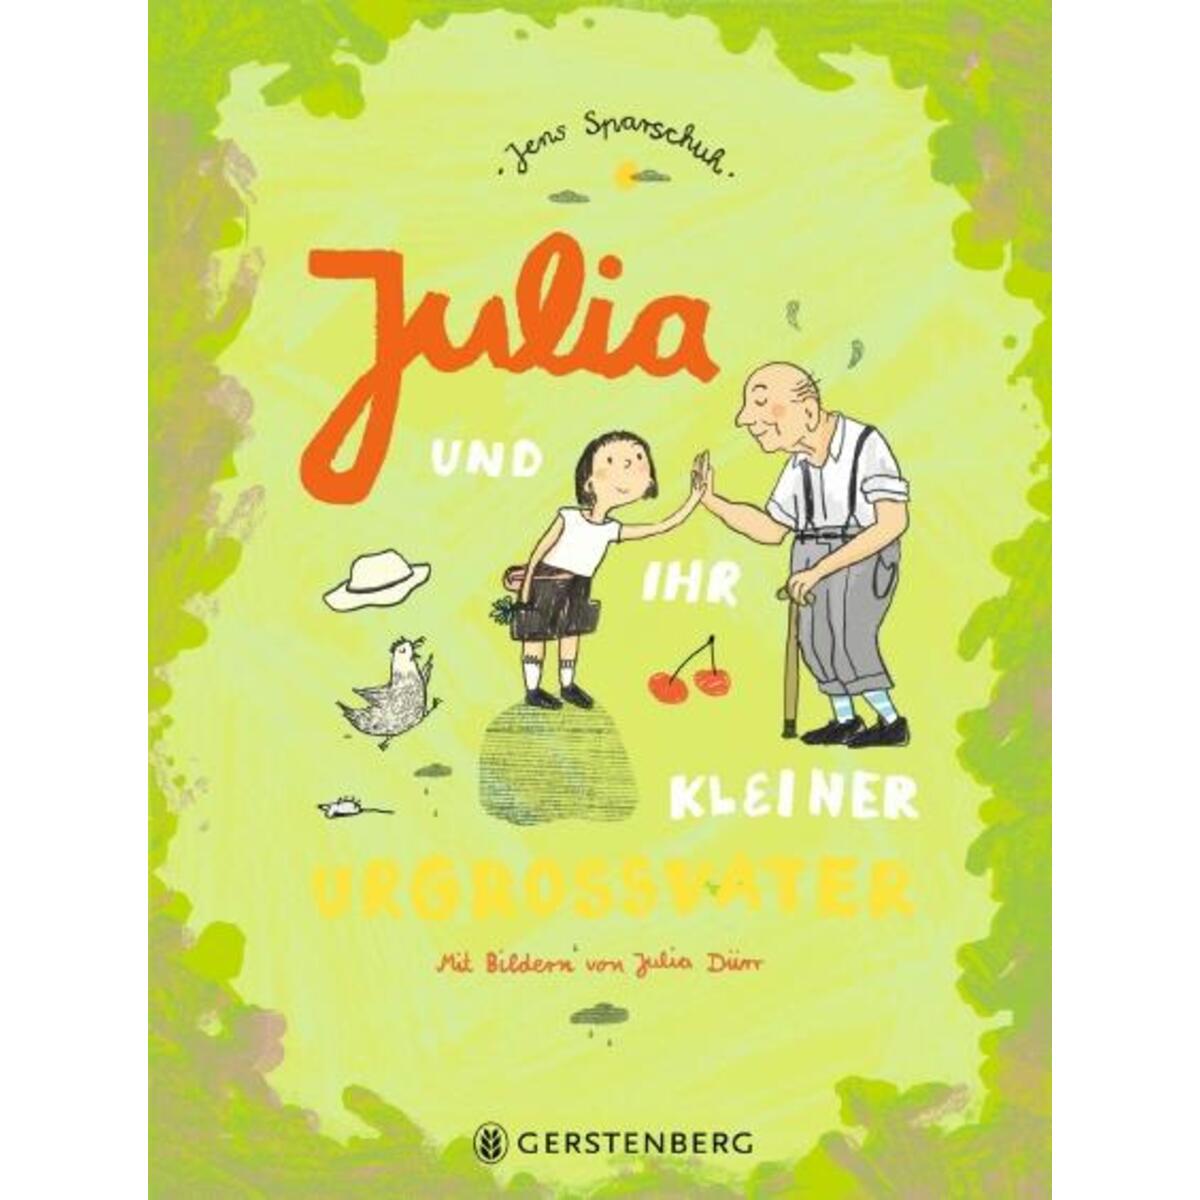 Julia und ihr kleiner Urgroßvater von Gerstenberg Verlag